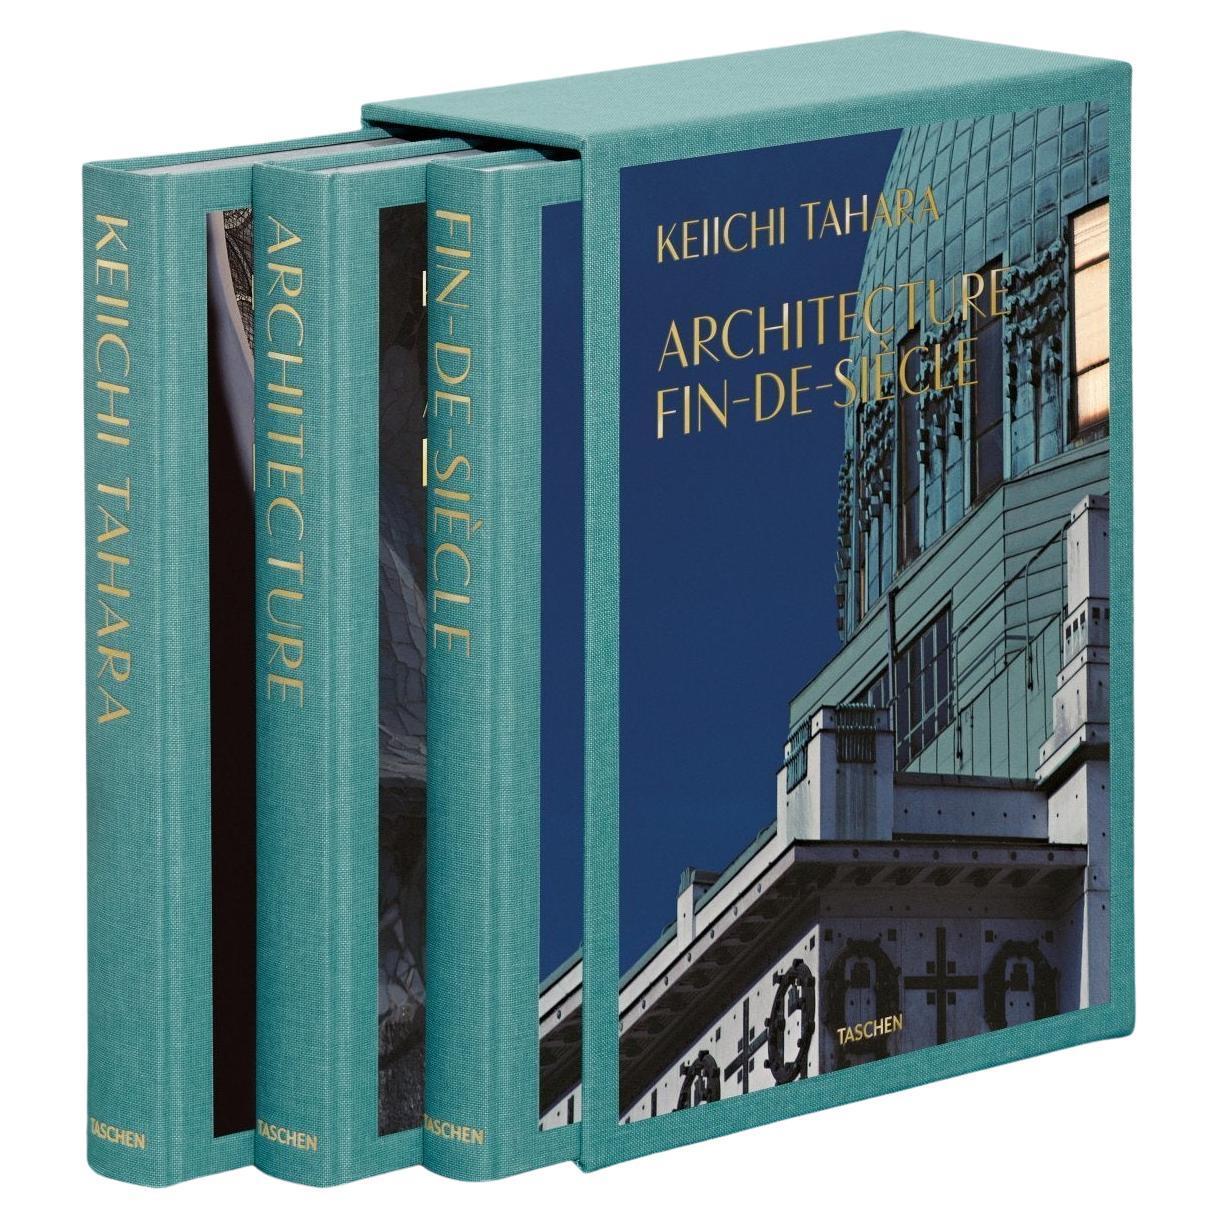 Keiichi Tahara, Architecture Fin-de-Siècle, édition limitée, lot de 3 livres